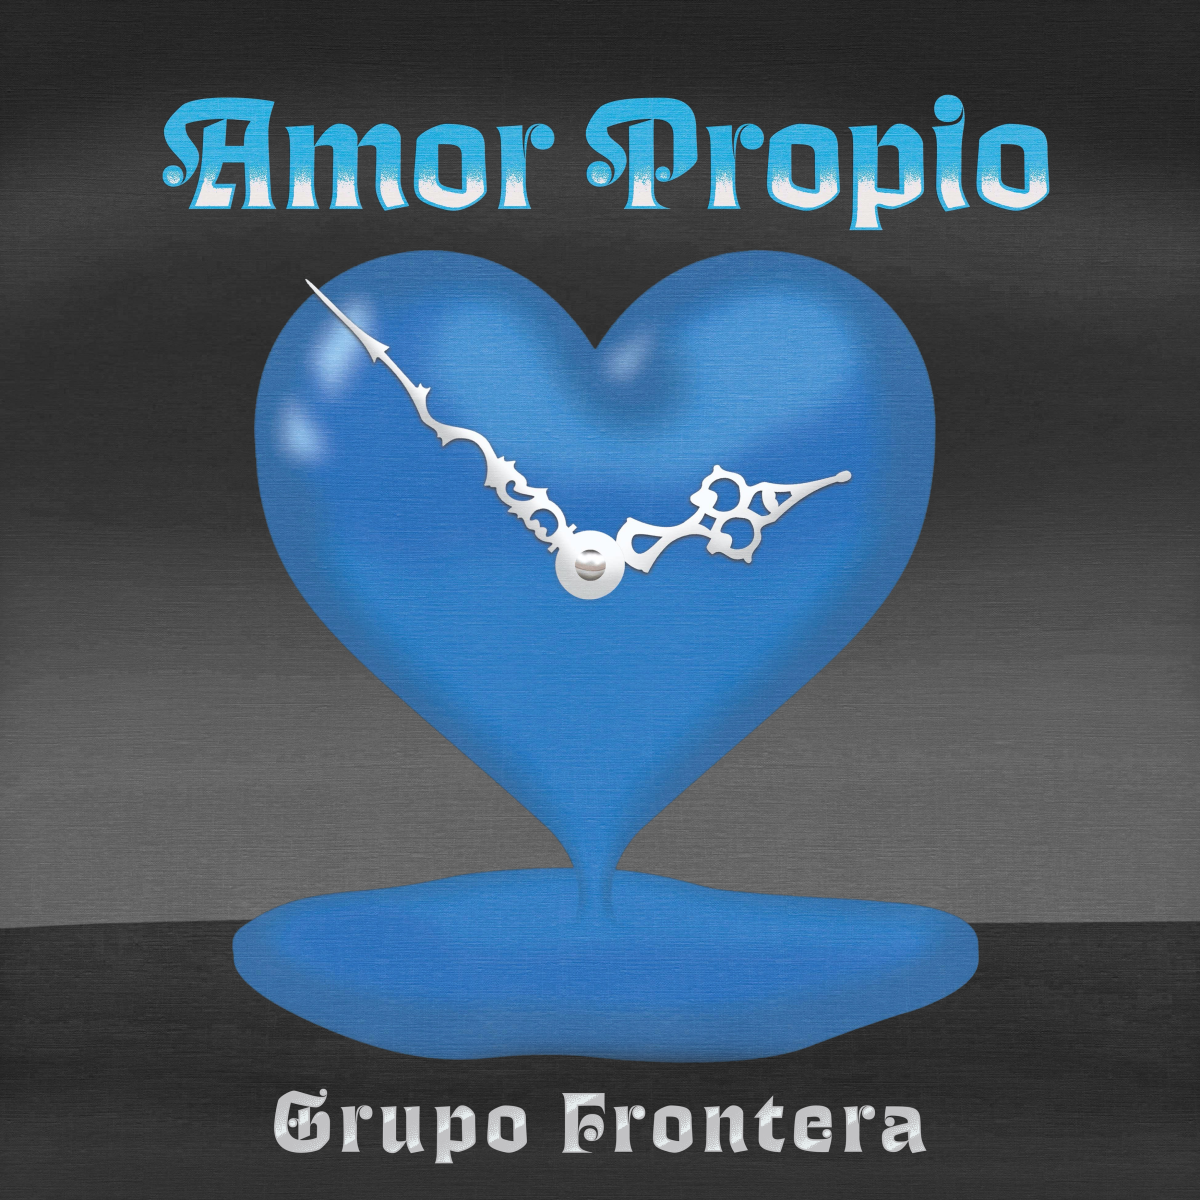 Portada del nuevo sencillo "Amor propio" de Grupo Frontera.